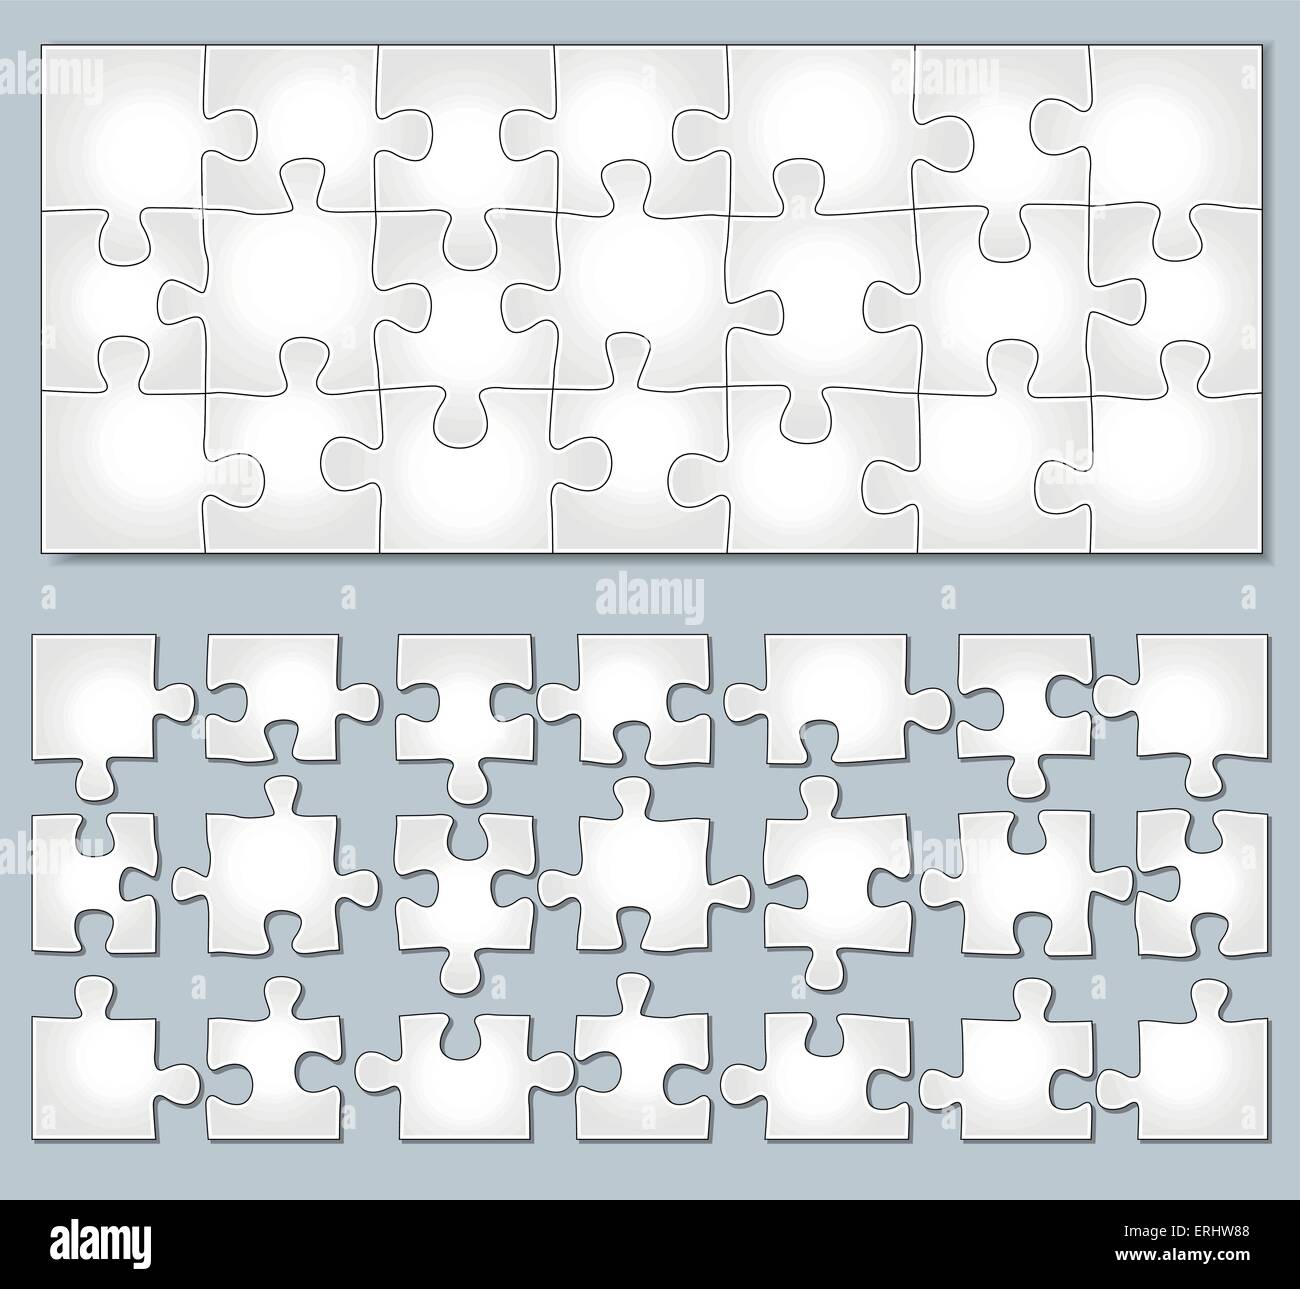 Illustrazione Vettoriale orizzontale di puzzle con elementi separati Illustrazione Vettoriale